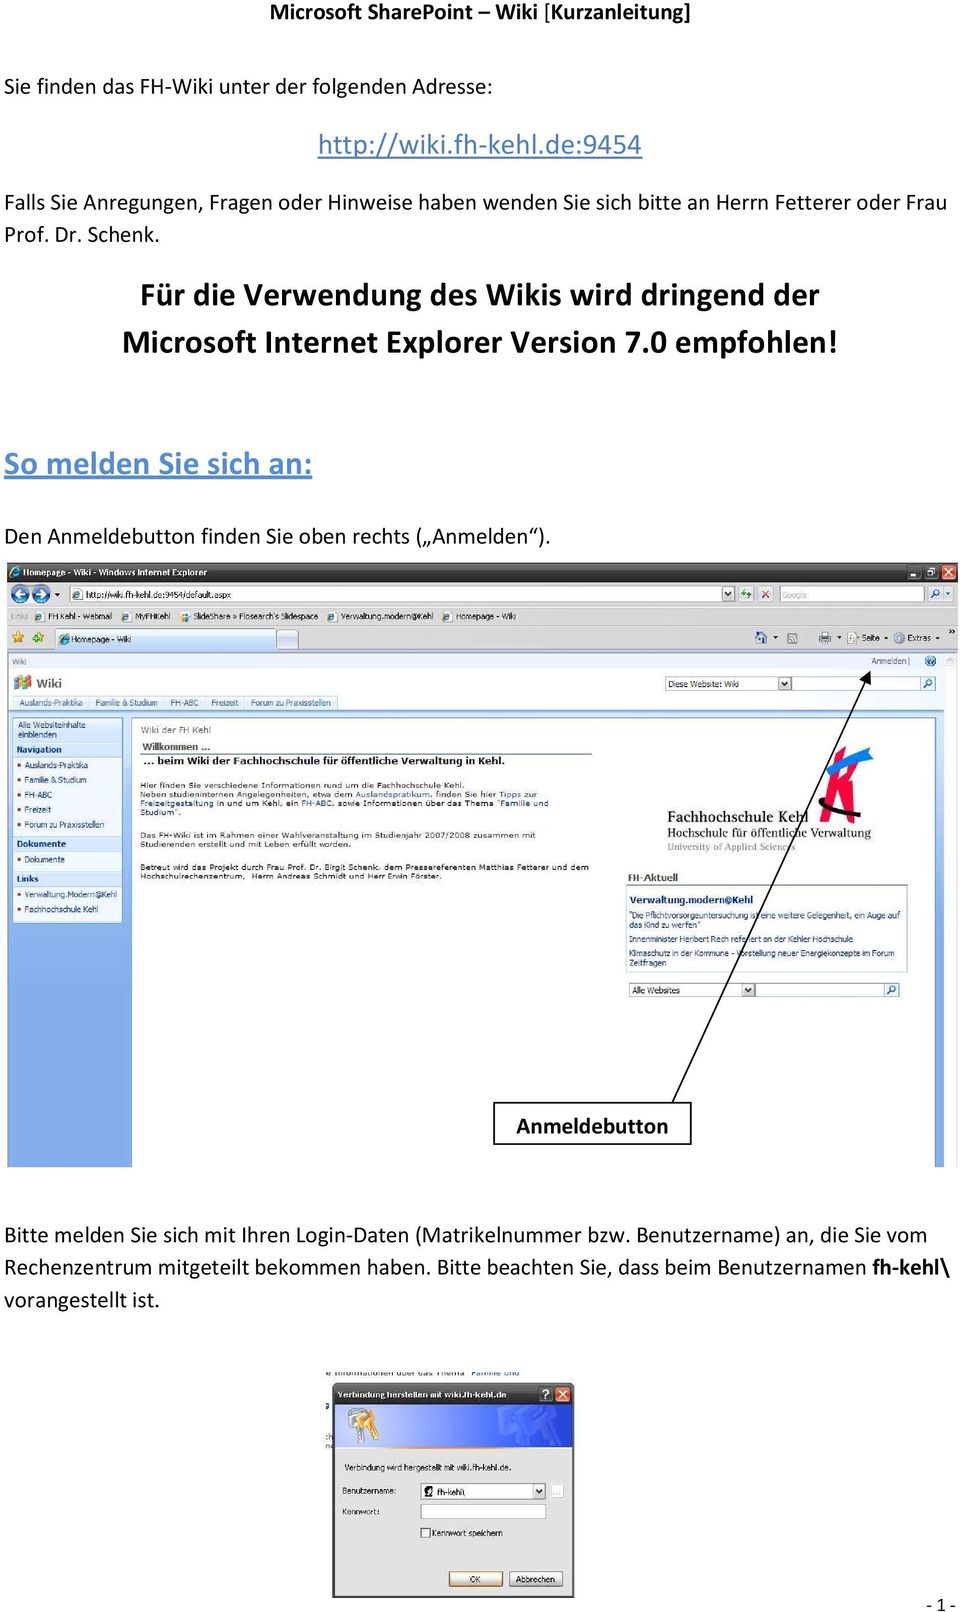 Für die Verwendung des Wikis wird dringend der Microsoft Internet Explorer Version 7.0 empfohlen!